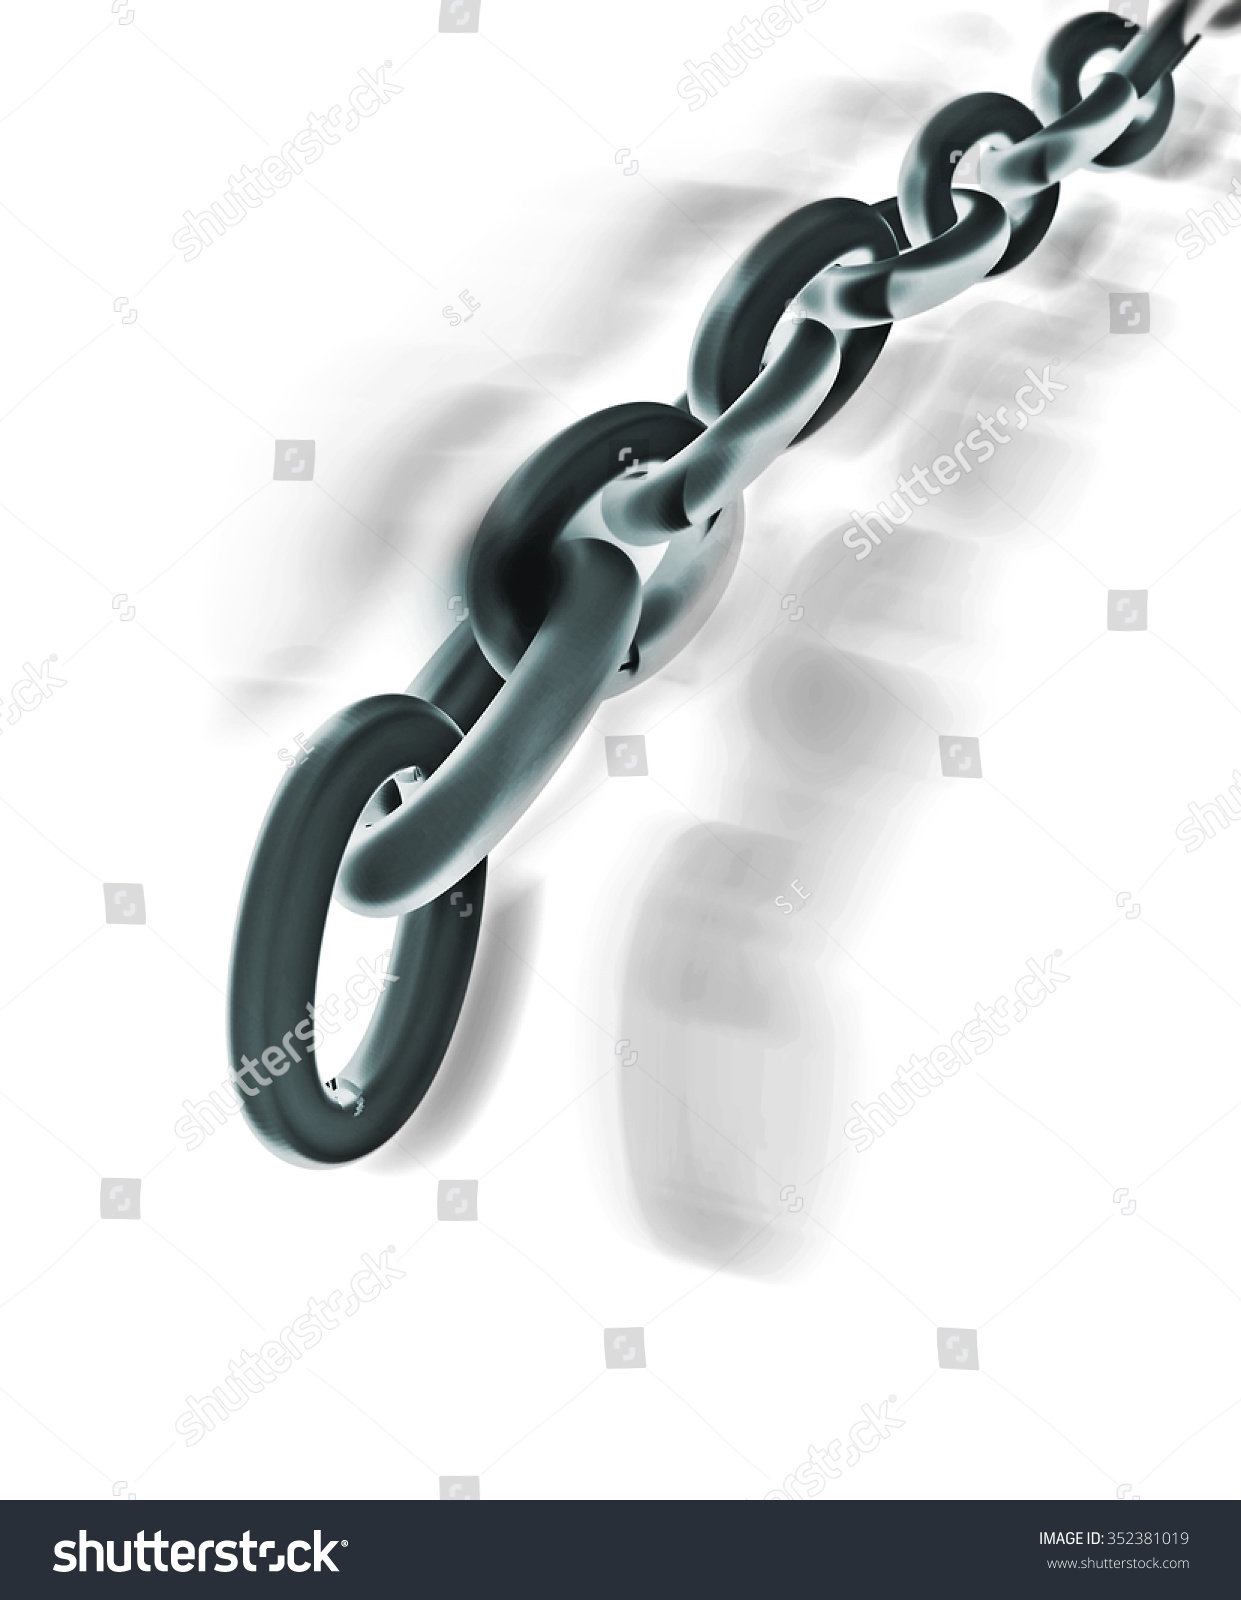 Chain Motion Stock Illustration 352381019 - Shutterstock